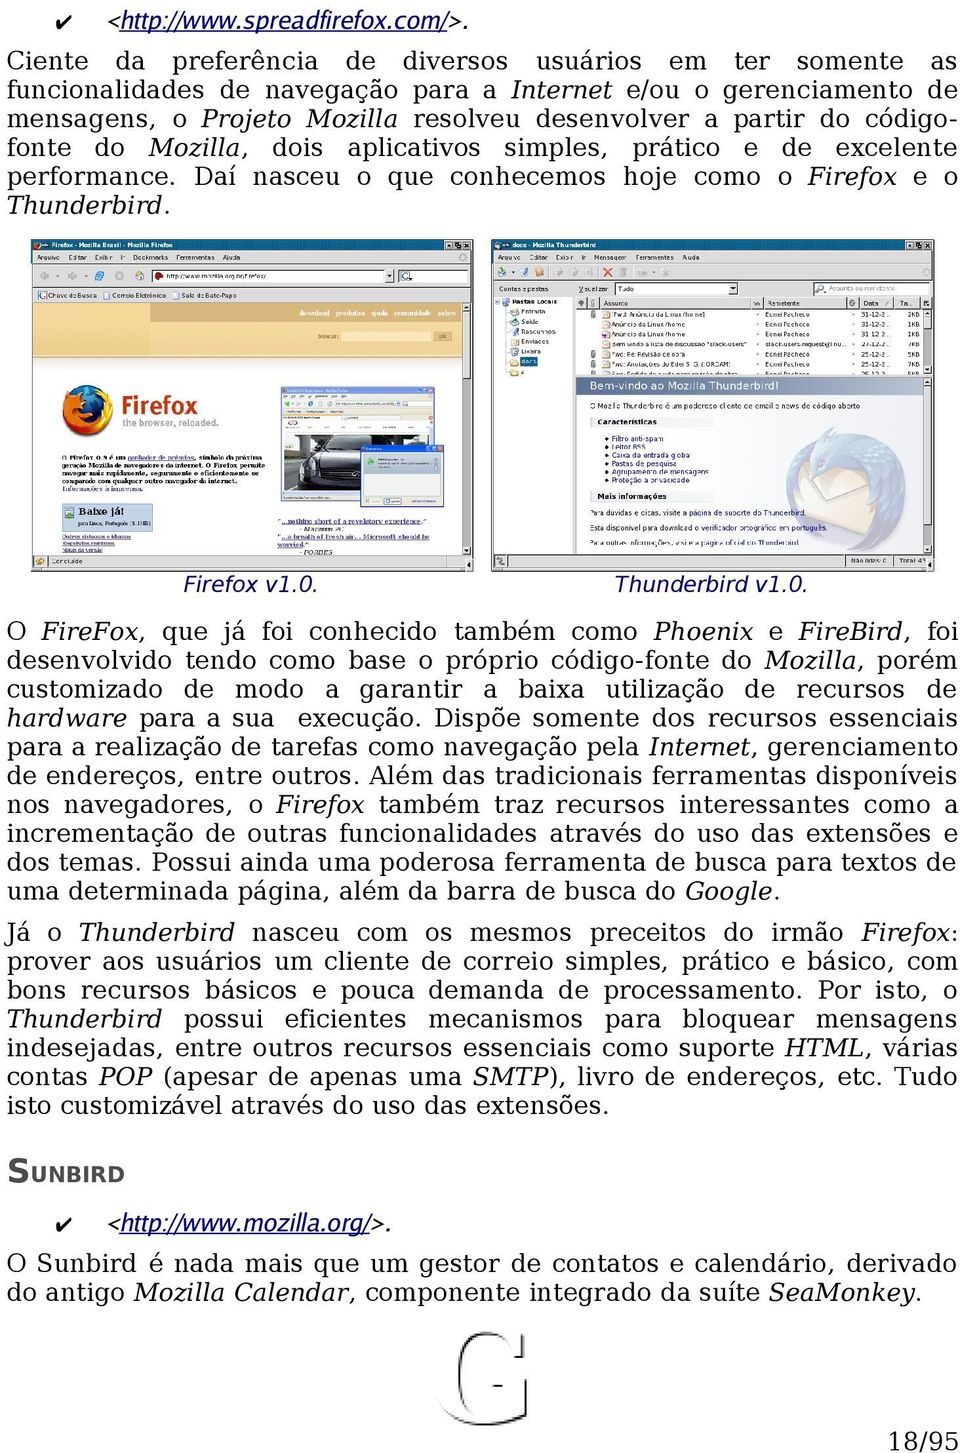 códigofonte do Mozilla, dois aplicativos simples, prático e de excelente performance. Daí nasceu o que conhecemos hoje como o Firefox e o Thunderbird. Firefox v1.0.